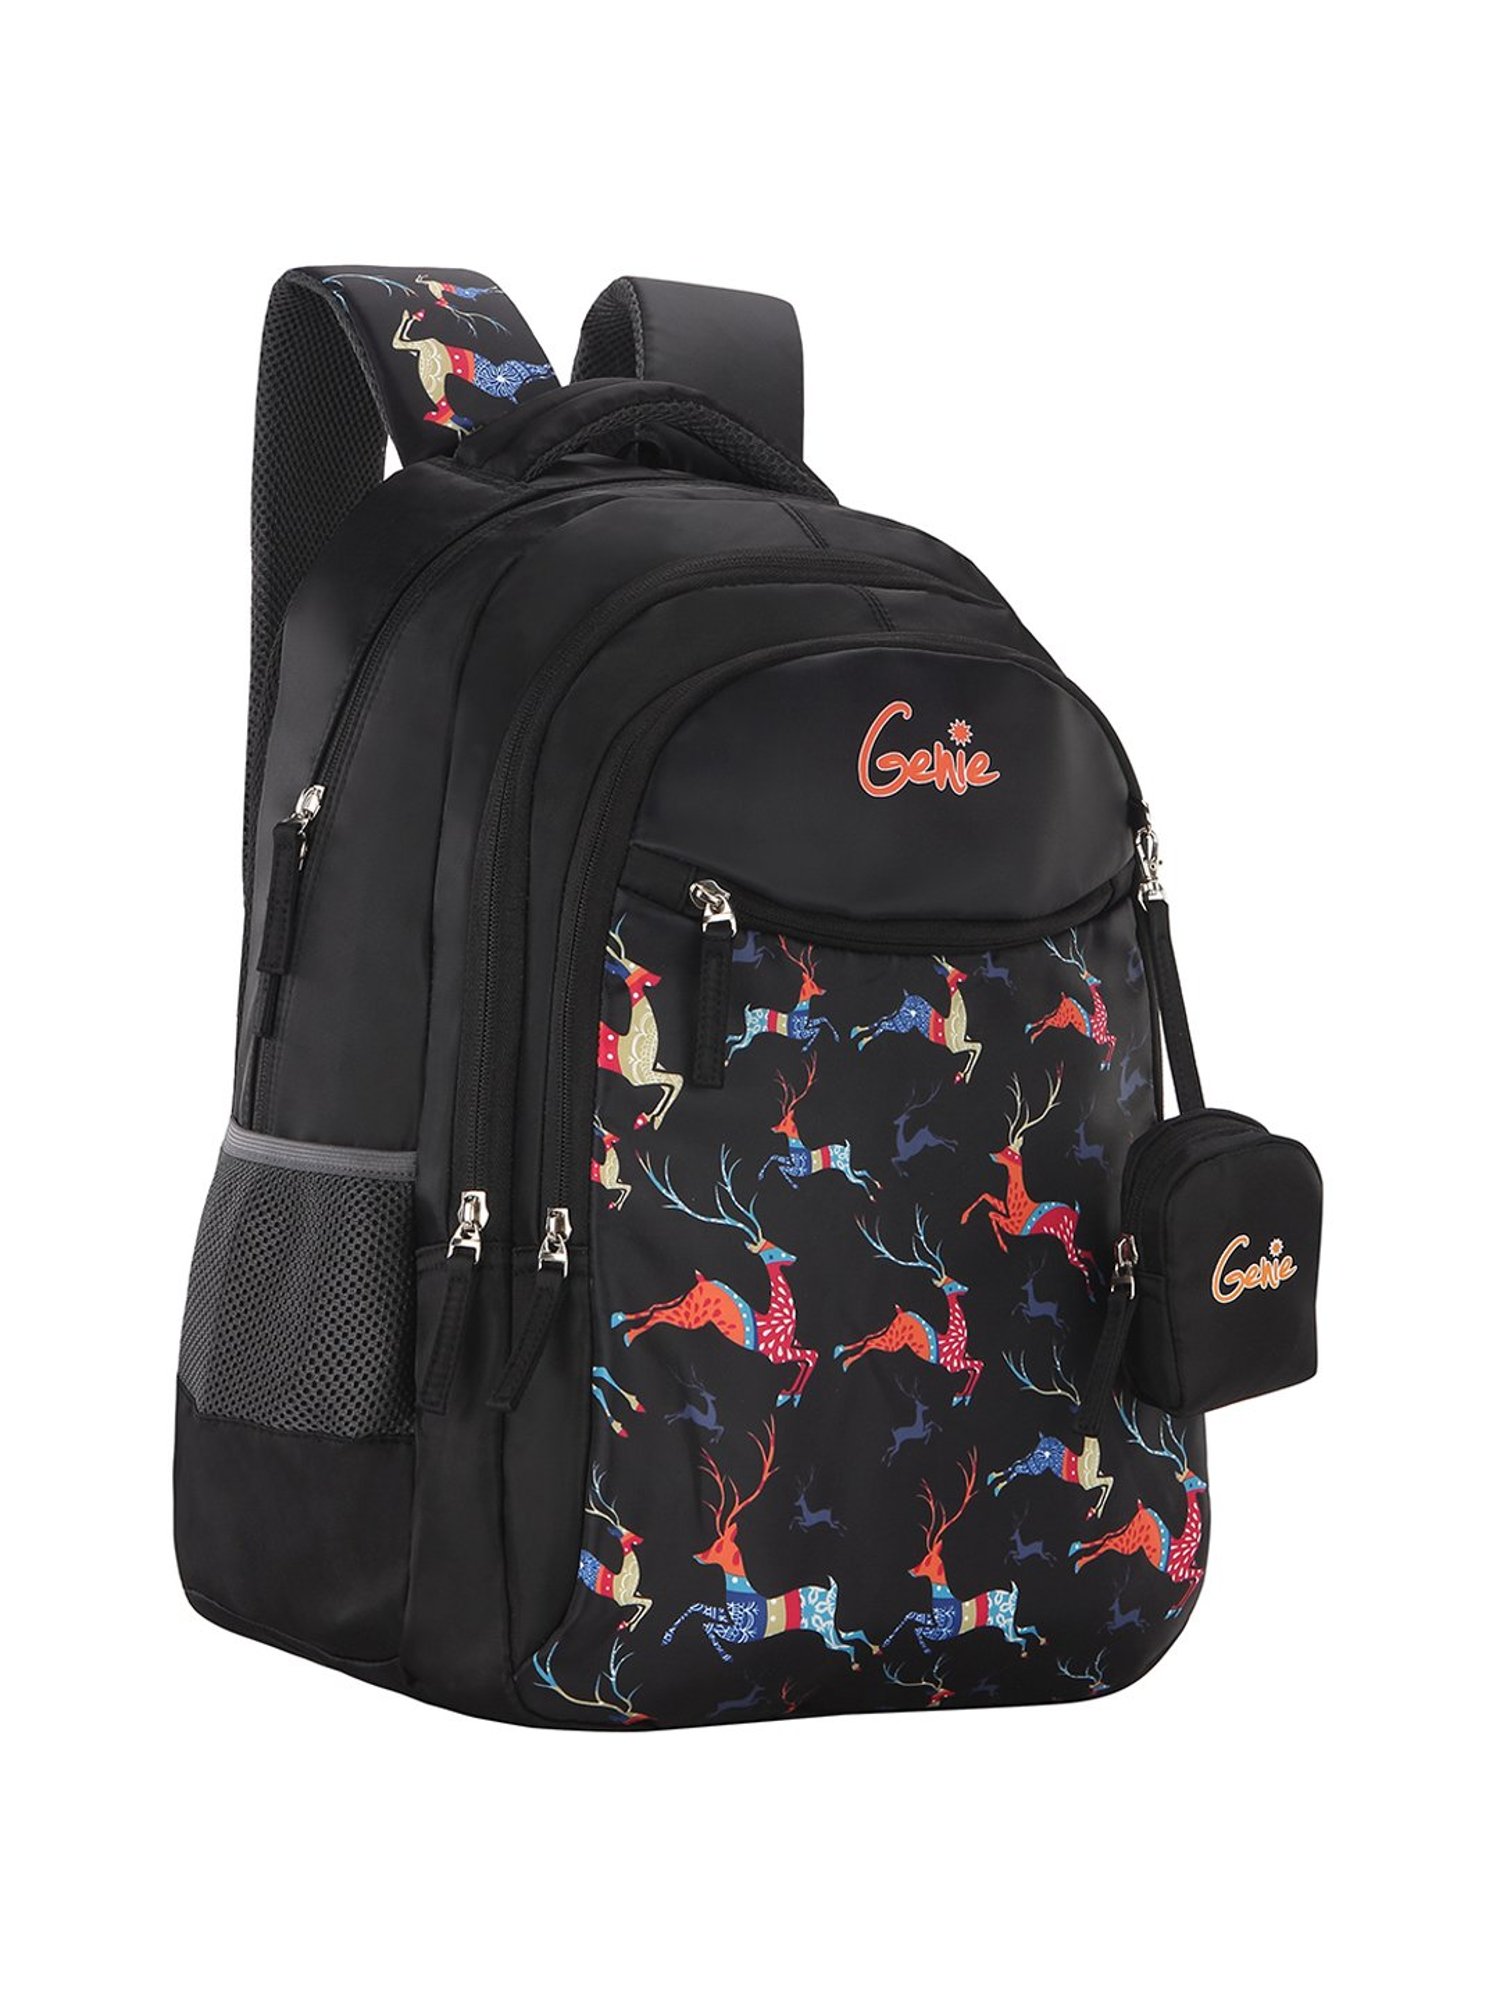 Genie Cool 19 Inch Backpack  Dhariwal Bags